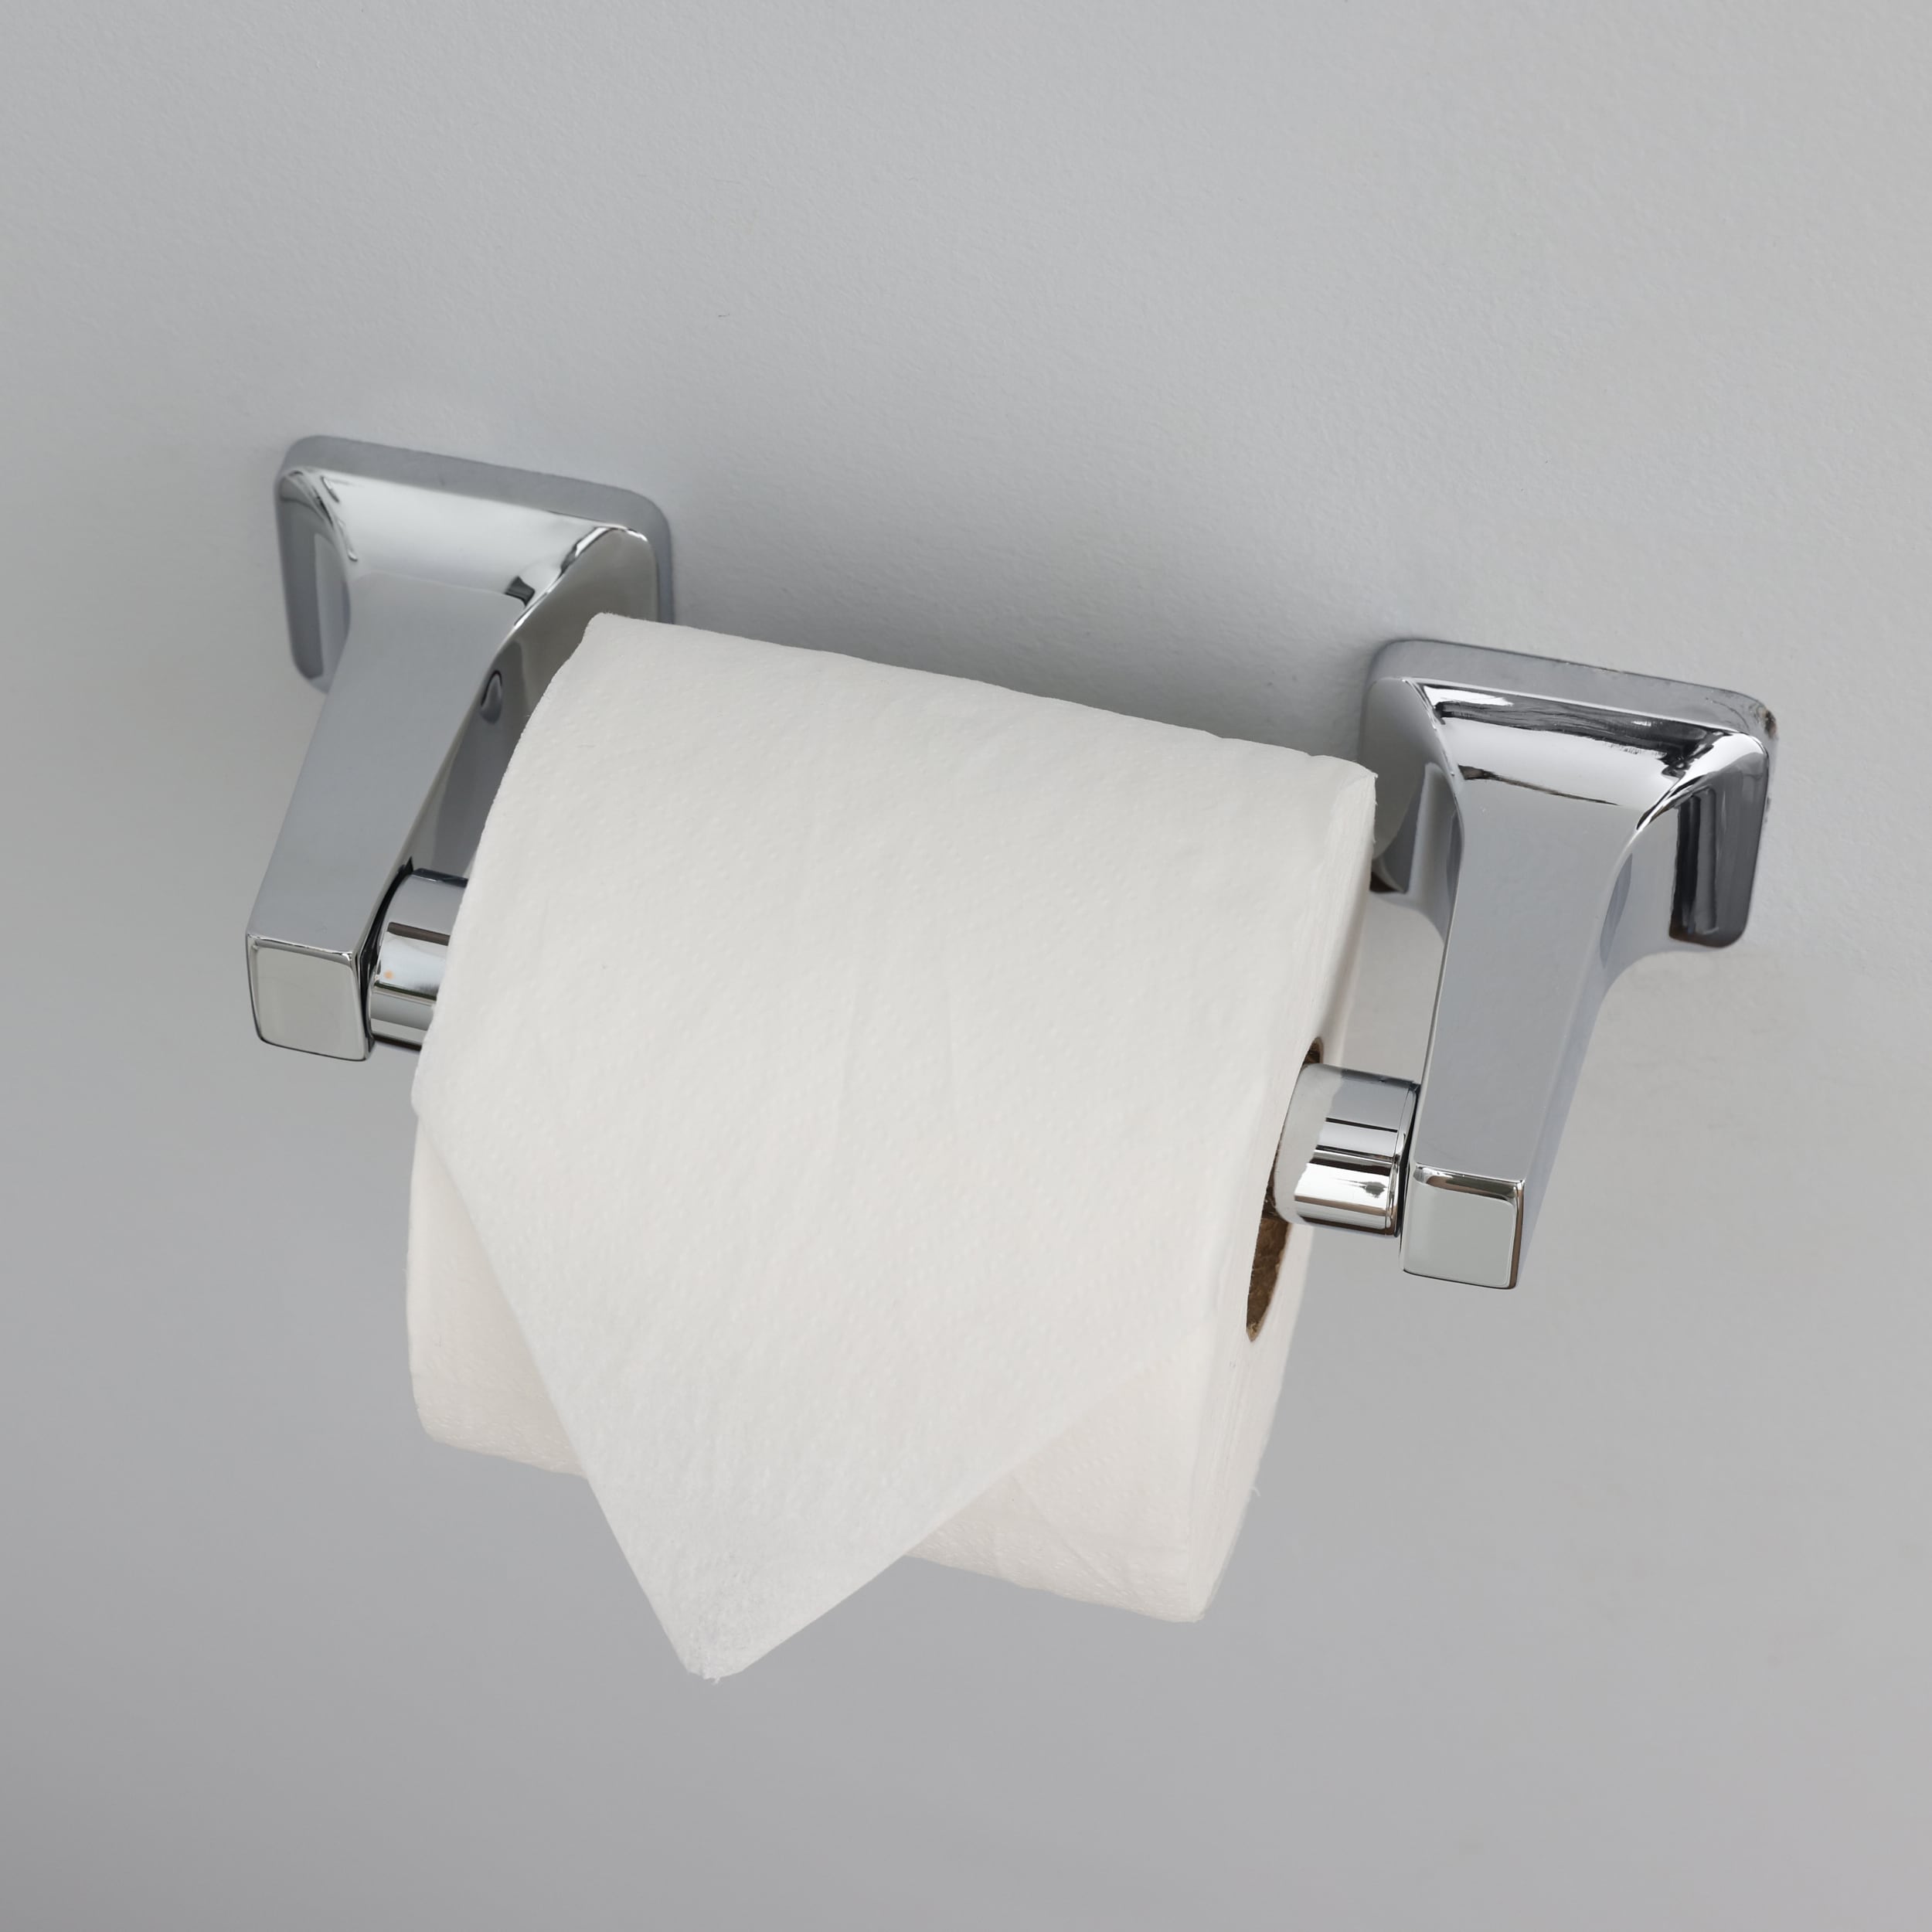 Project Source Seton Brushed Nickel Recessed Spring-Loaded Toilet Paper Holder | FSI SRTP Bnic